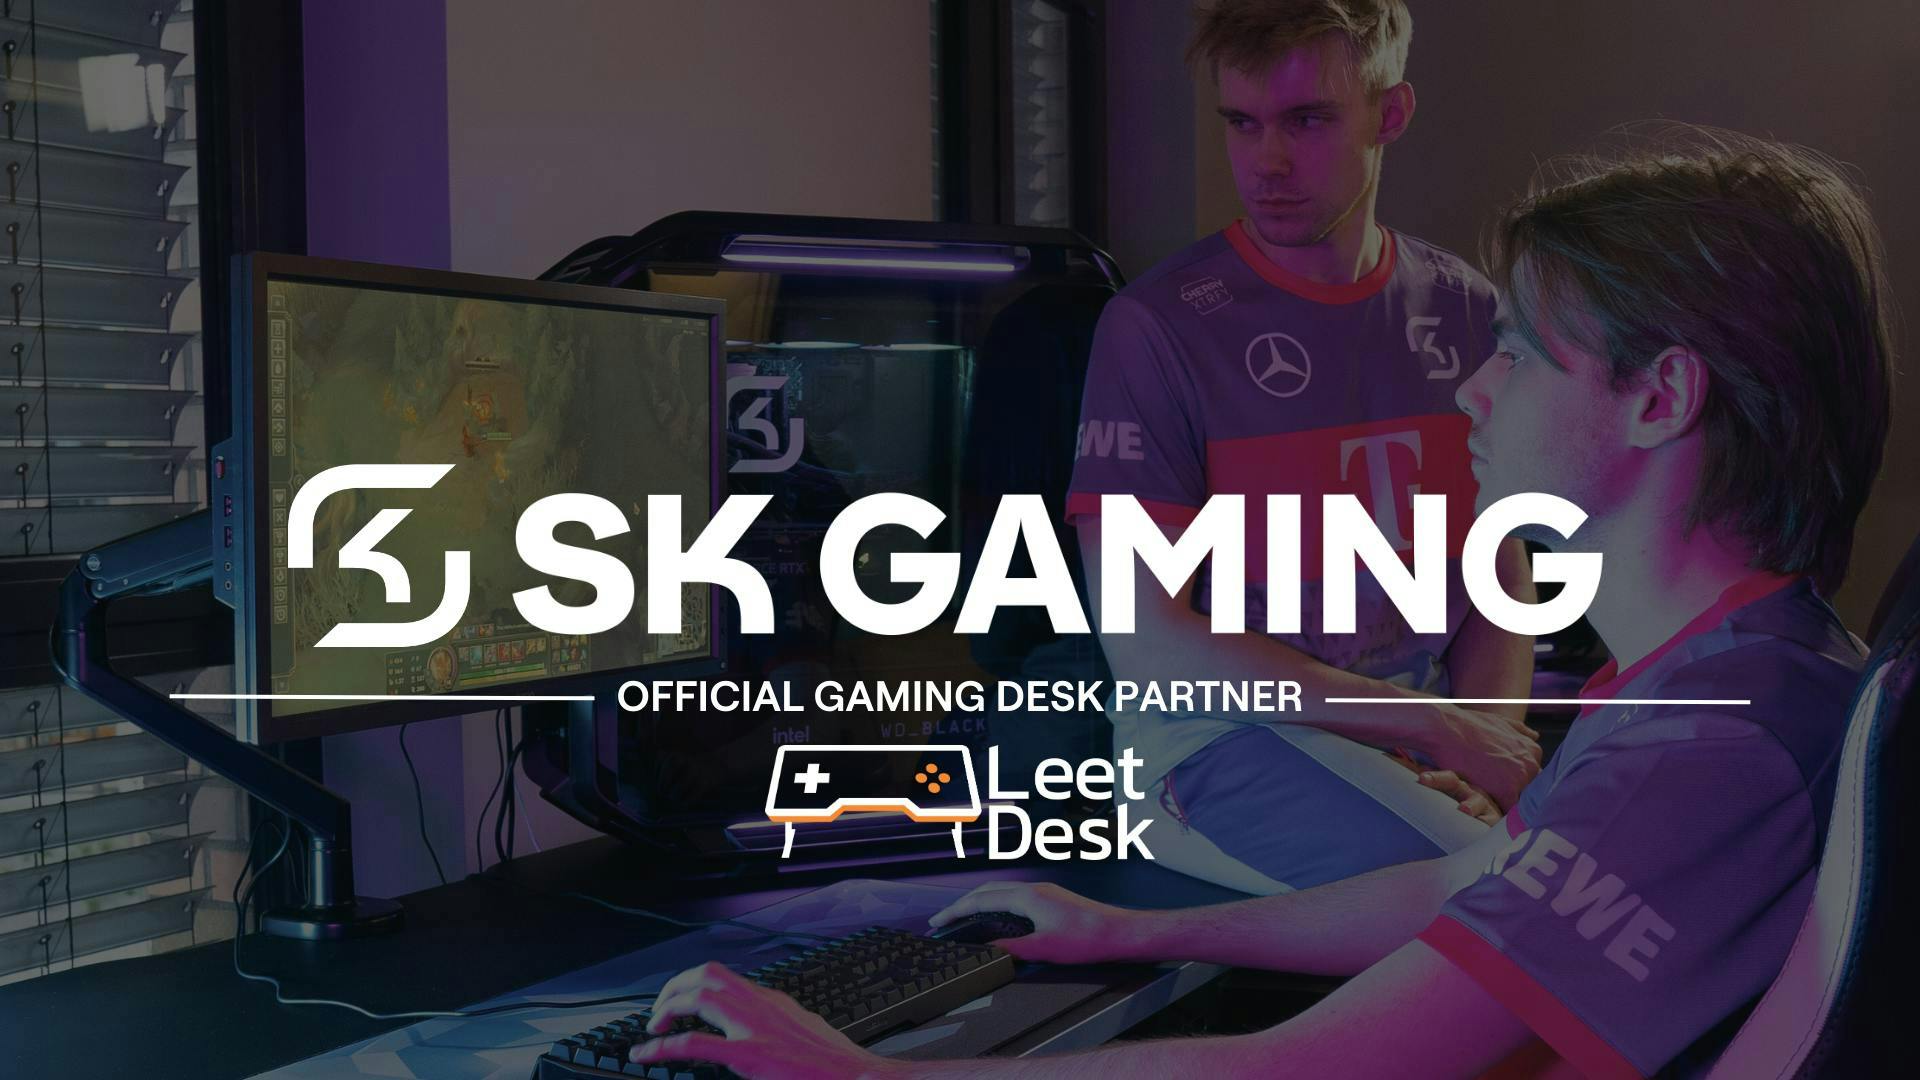 I due loghi di SK Gaming e LeetDesk annunciano la partnership e si sovrappongono a un'immagine dei membri di SK Gaming che giocano sui loro LeetDesk.